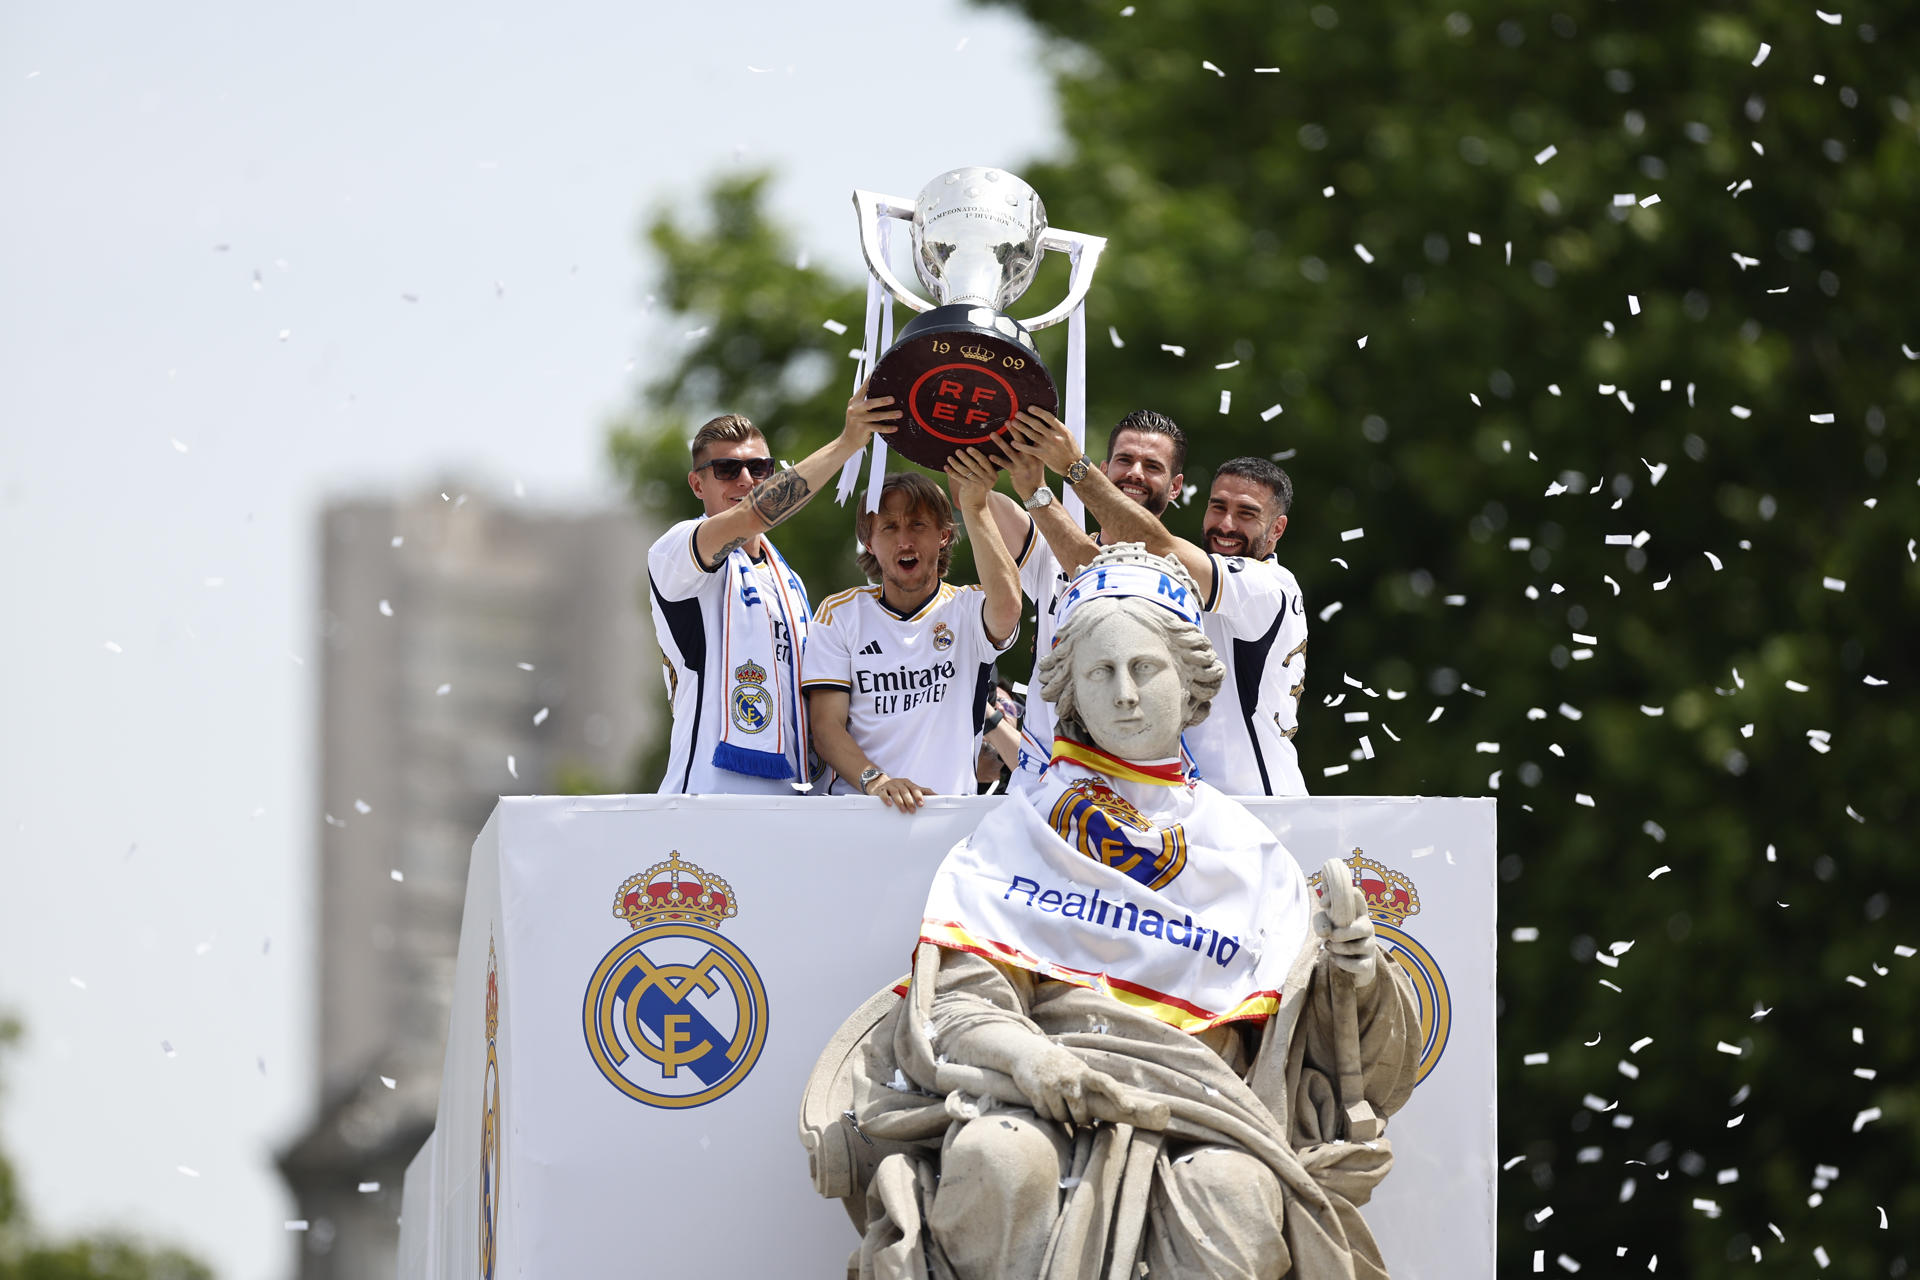 Cronología, momentazos y declaraciones durante la rúa del Real Madrid